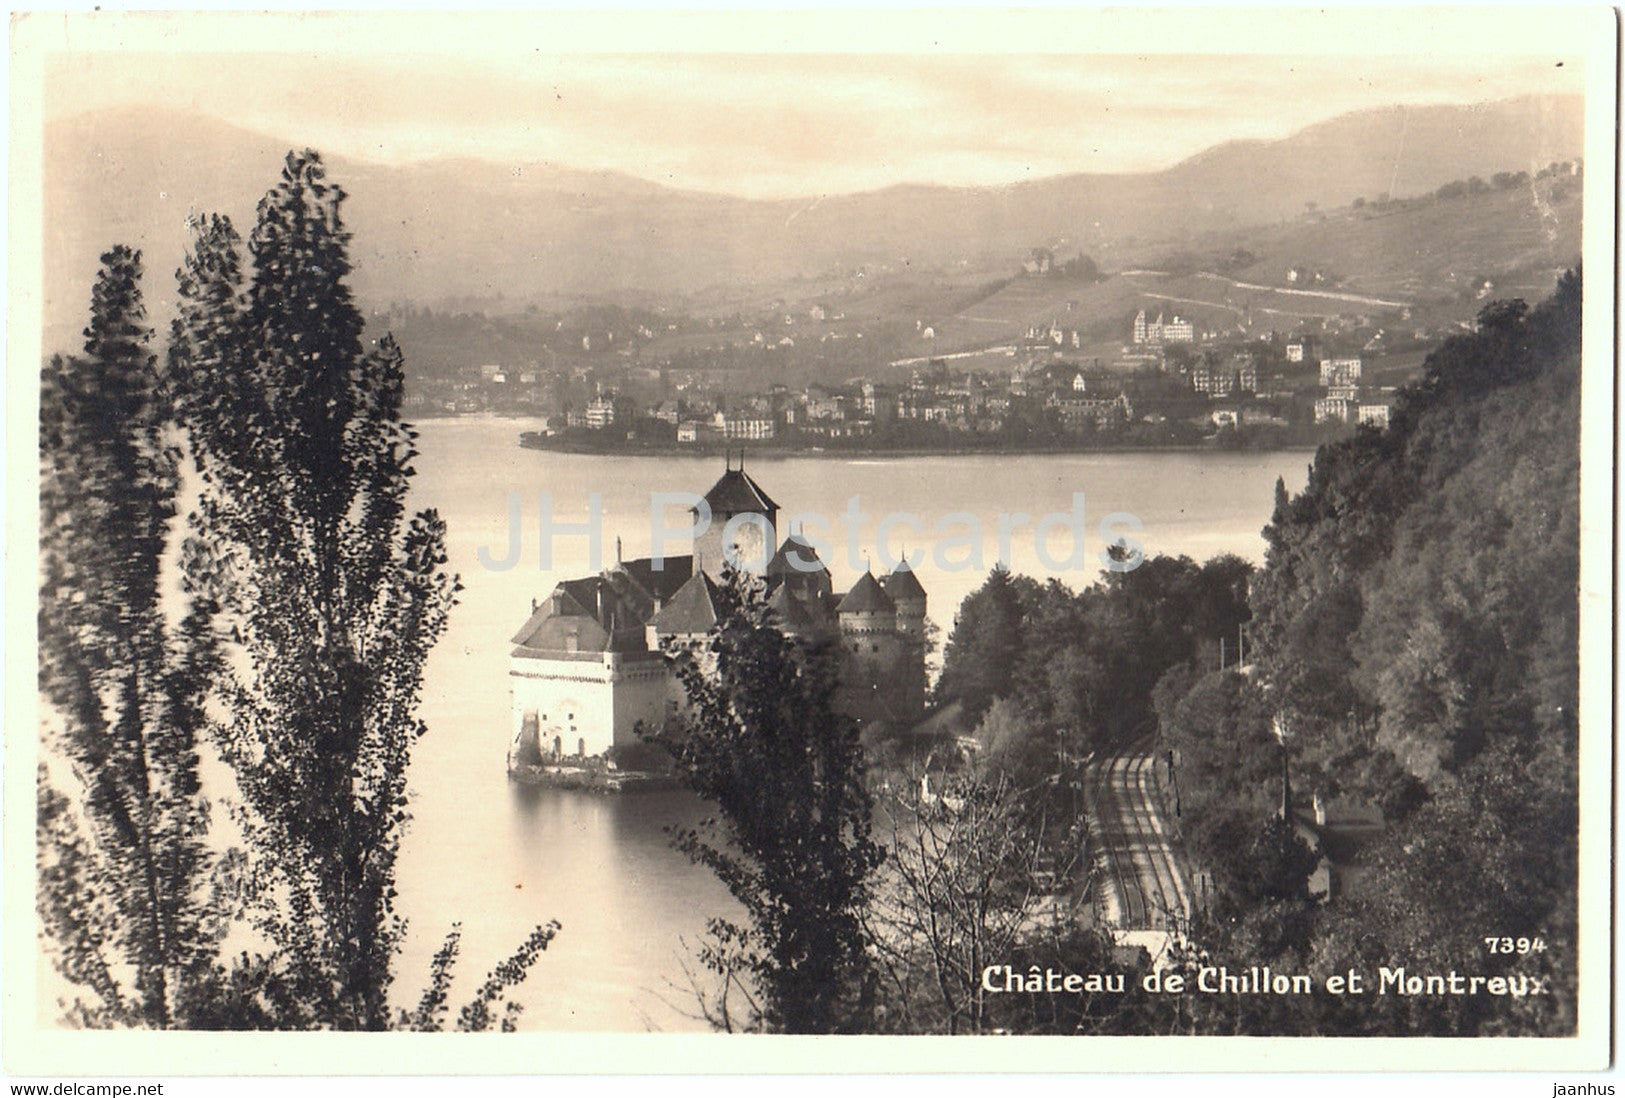 Chateau de Chillon et Montreux - 7394 - old postcard - 1926 - Switzerland - used - JH Postcards